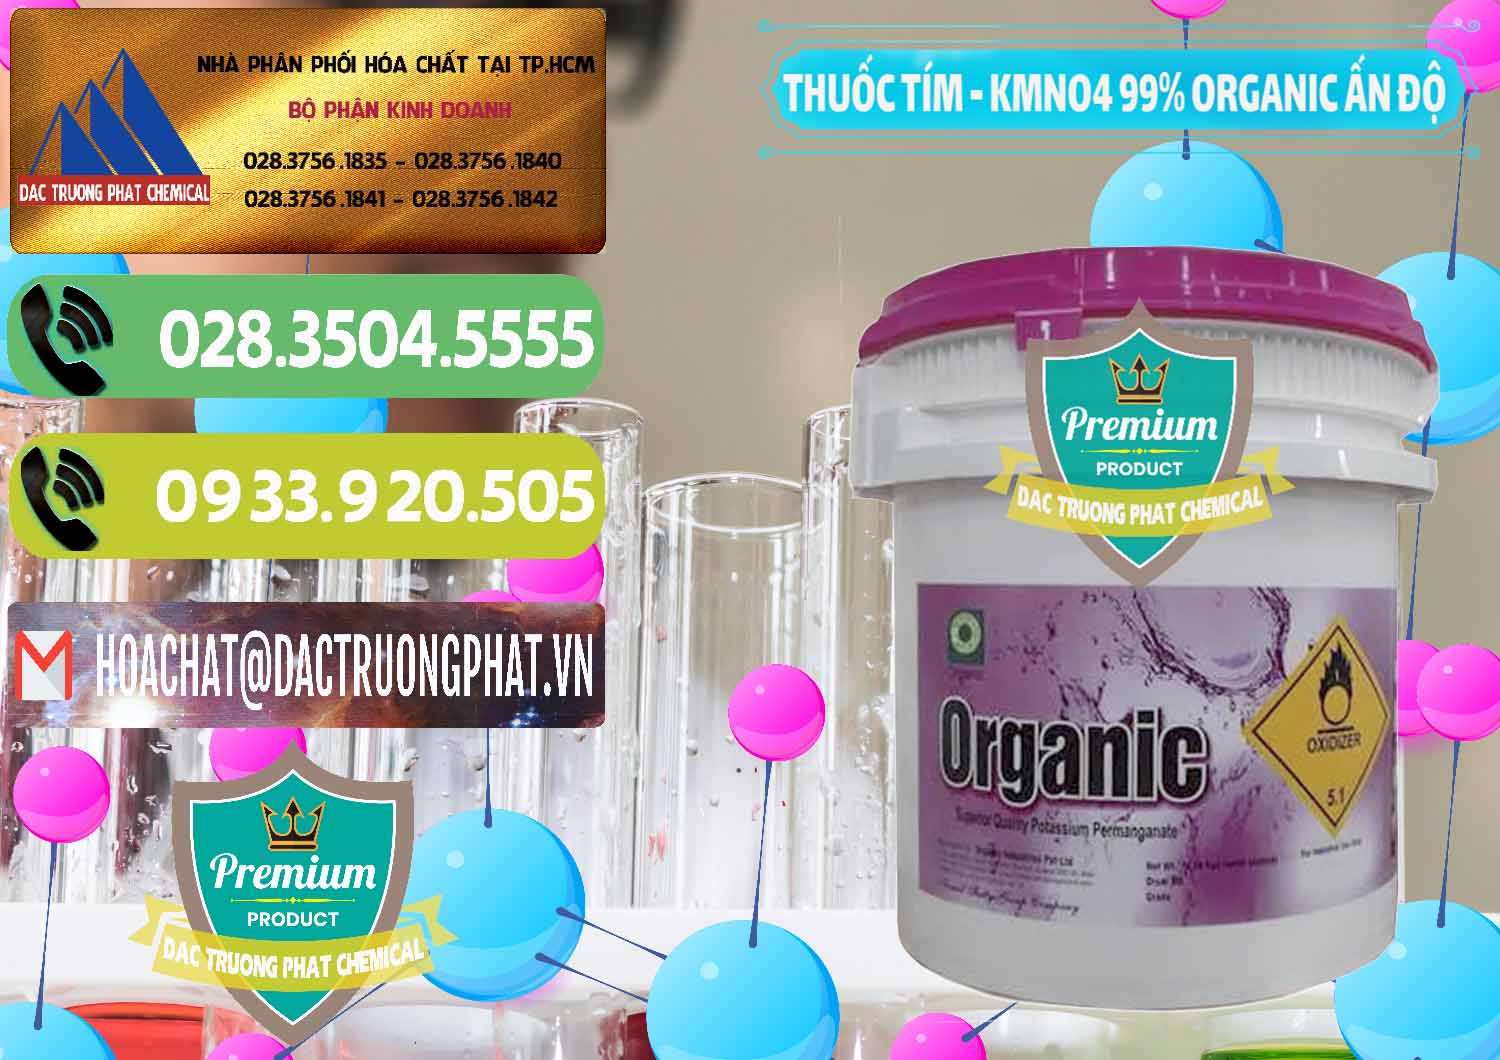 Cty chuyên phân phối và bán Thuốc Tím - KMNO4 99% Organic Ấn Độ India - 0216 - Chuyên bán & phân phối hóa chất tại TP.HCM - hoachatmientay.vn